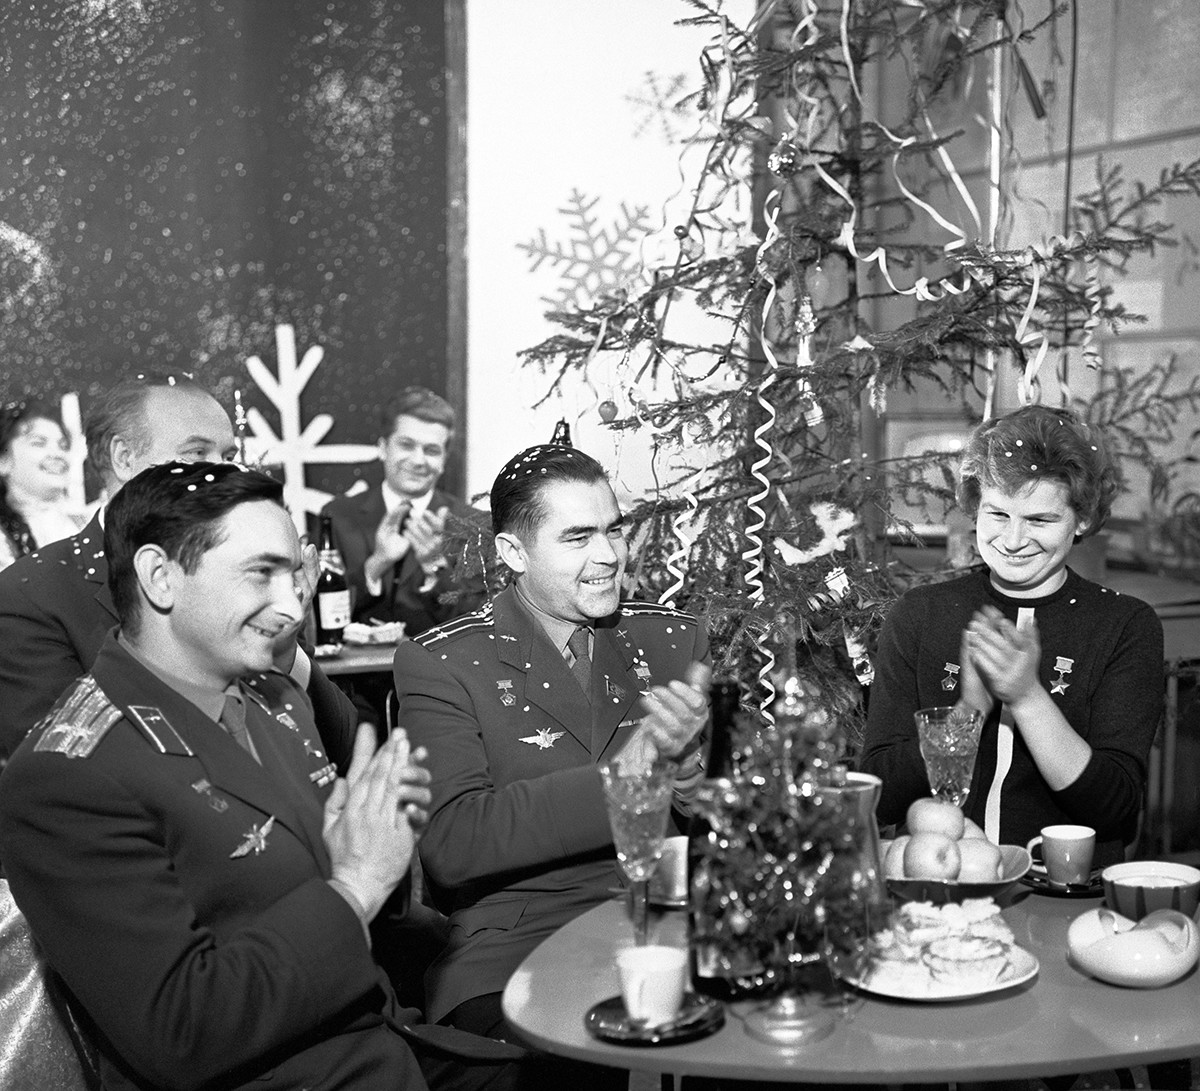 Moscow. USSR. Soviet cosmonauts Valery Bykovsky, Andrian Nikolayev, and Valentina Tereshkova (L-R) shooting in TV show 